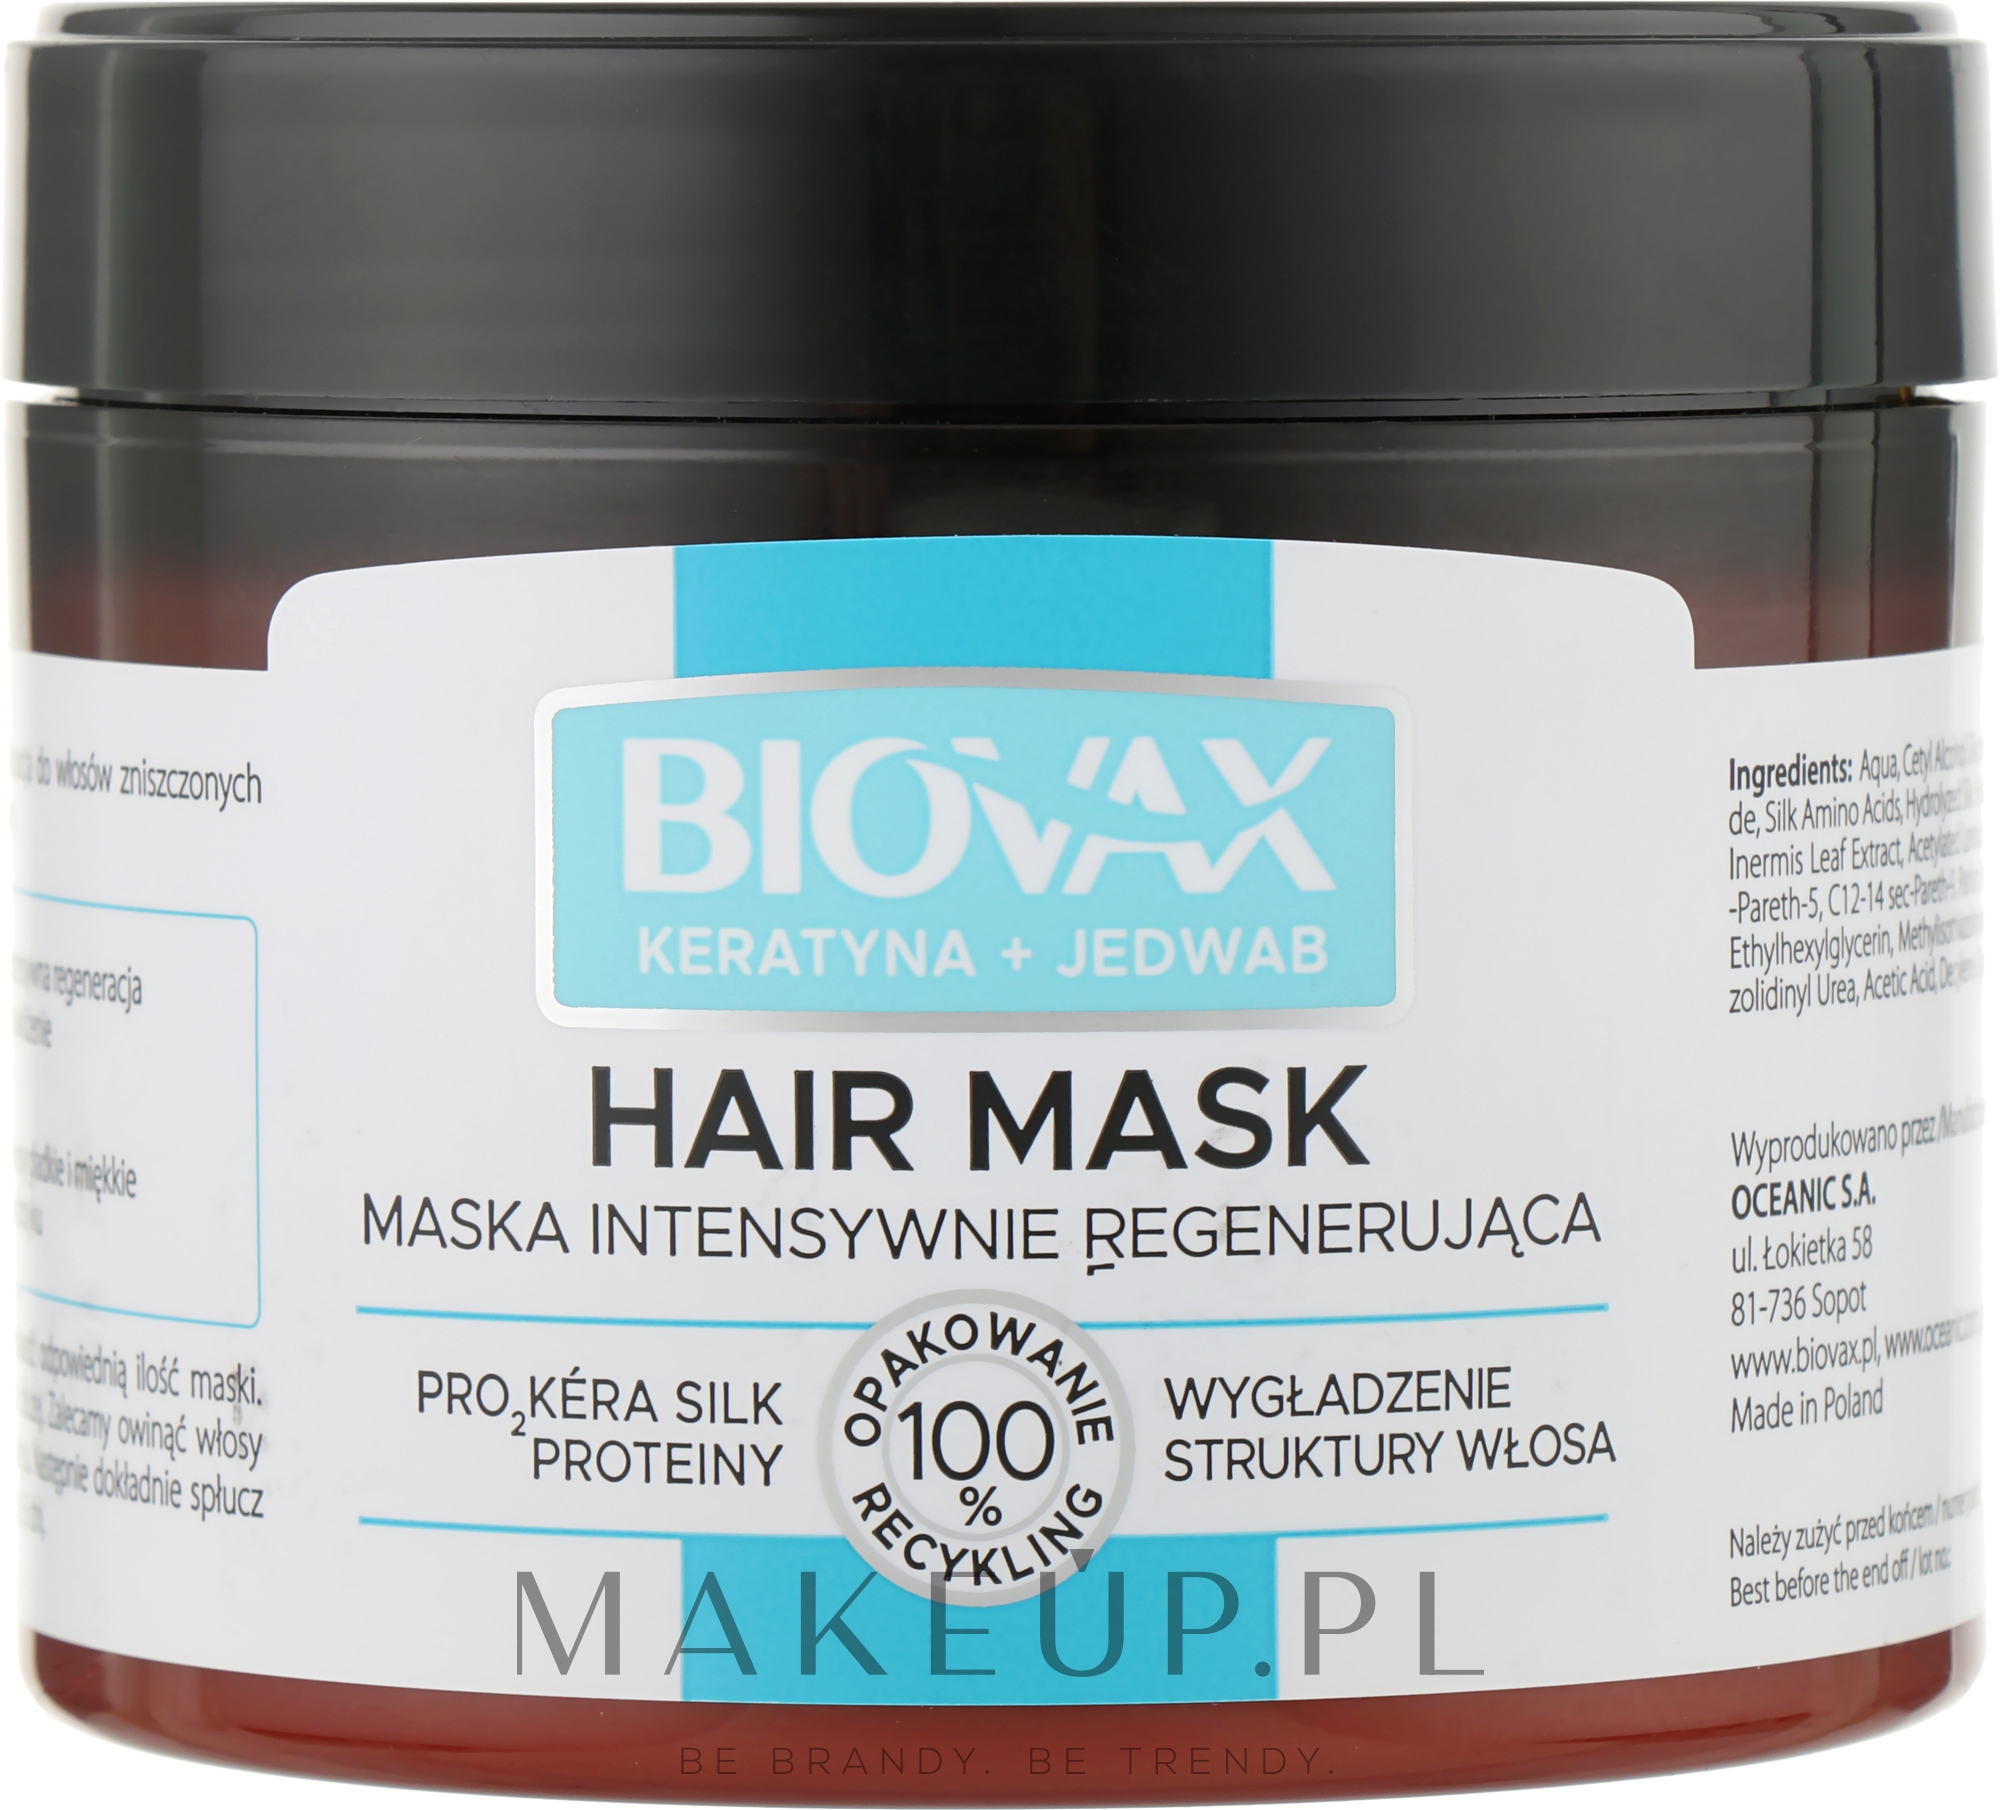 Maska intensywnie regenerująca i wygładzająca strukturę włosa - Biovax Keratin + Silk Hair Mask — Zdjęcie 250 ml